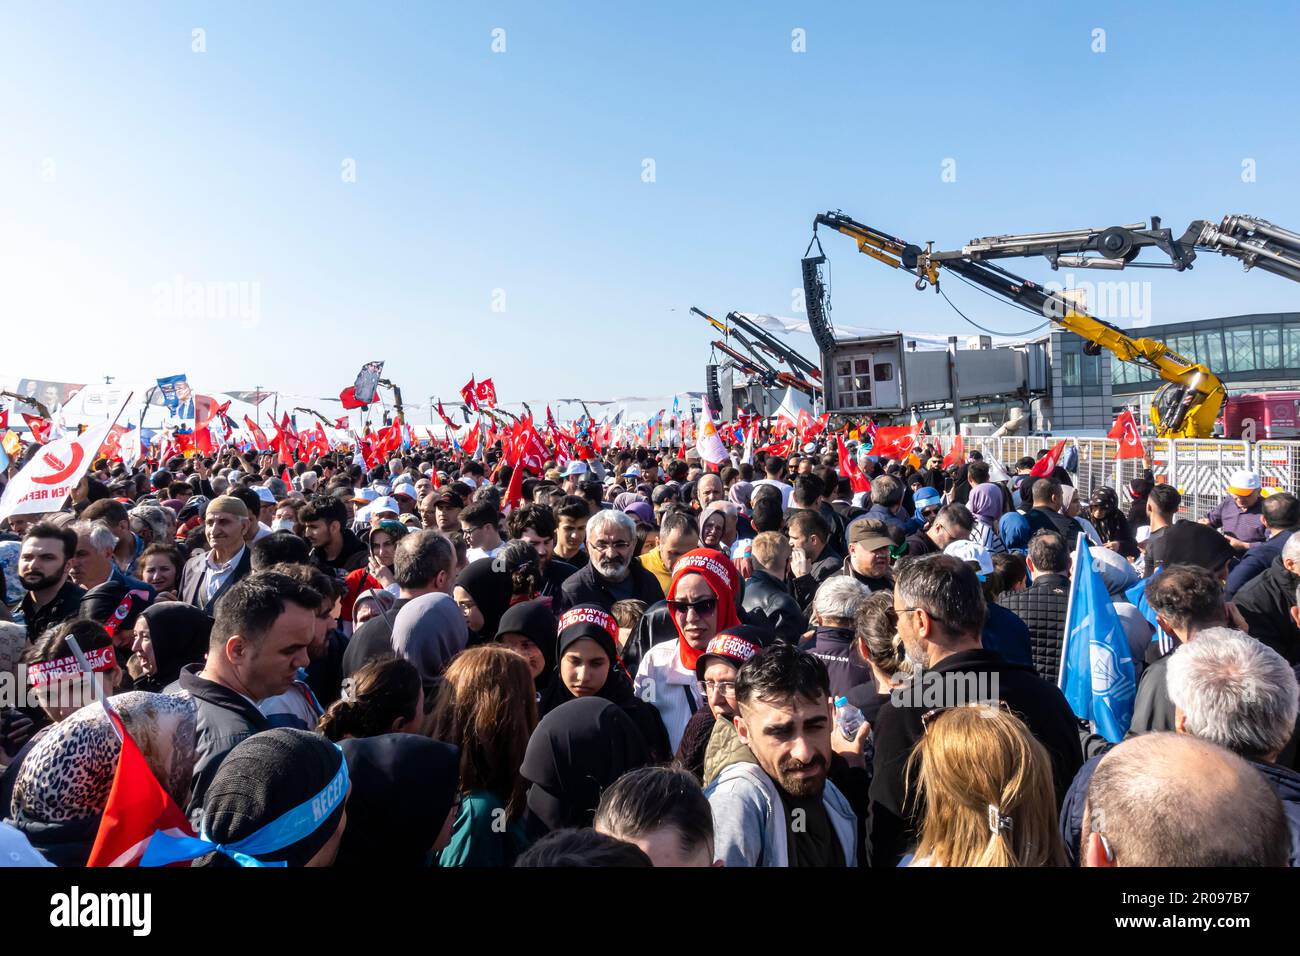 Élections en Turquie. Rassemblement Erdogan à Istanbul. La foule s'est rassemblée pour soutenir la campagne électorale du président Erdogan avant les élections présidentielles turques Banque D'Images